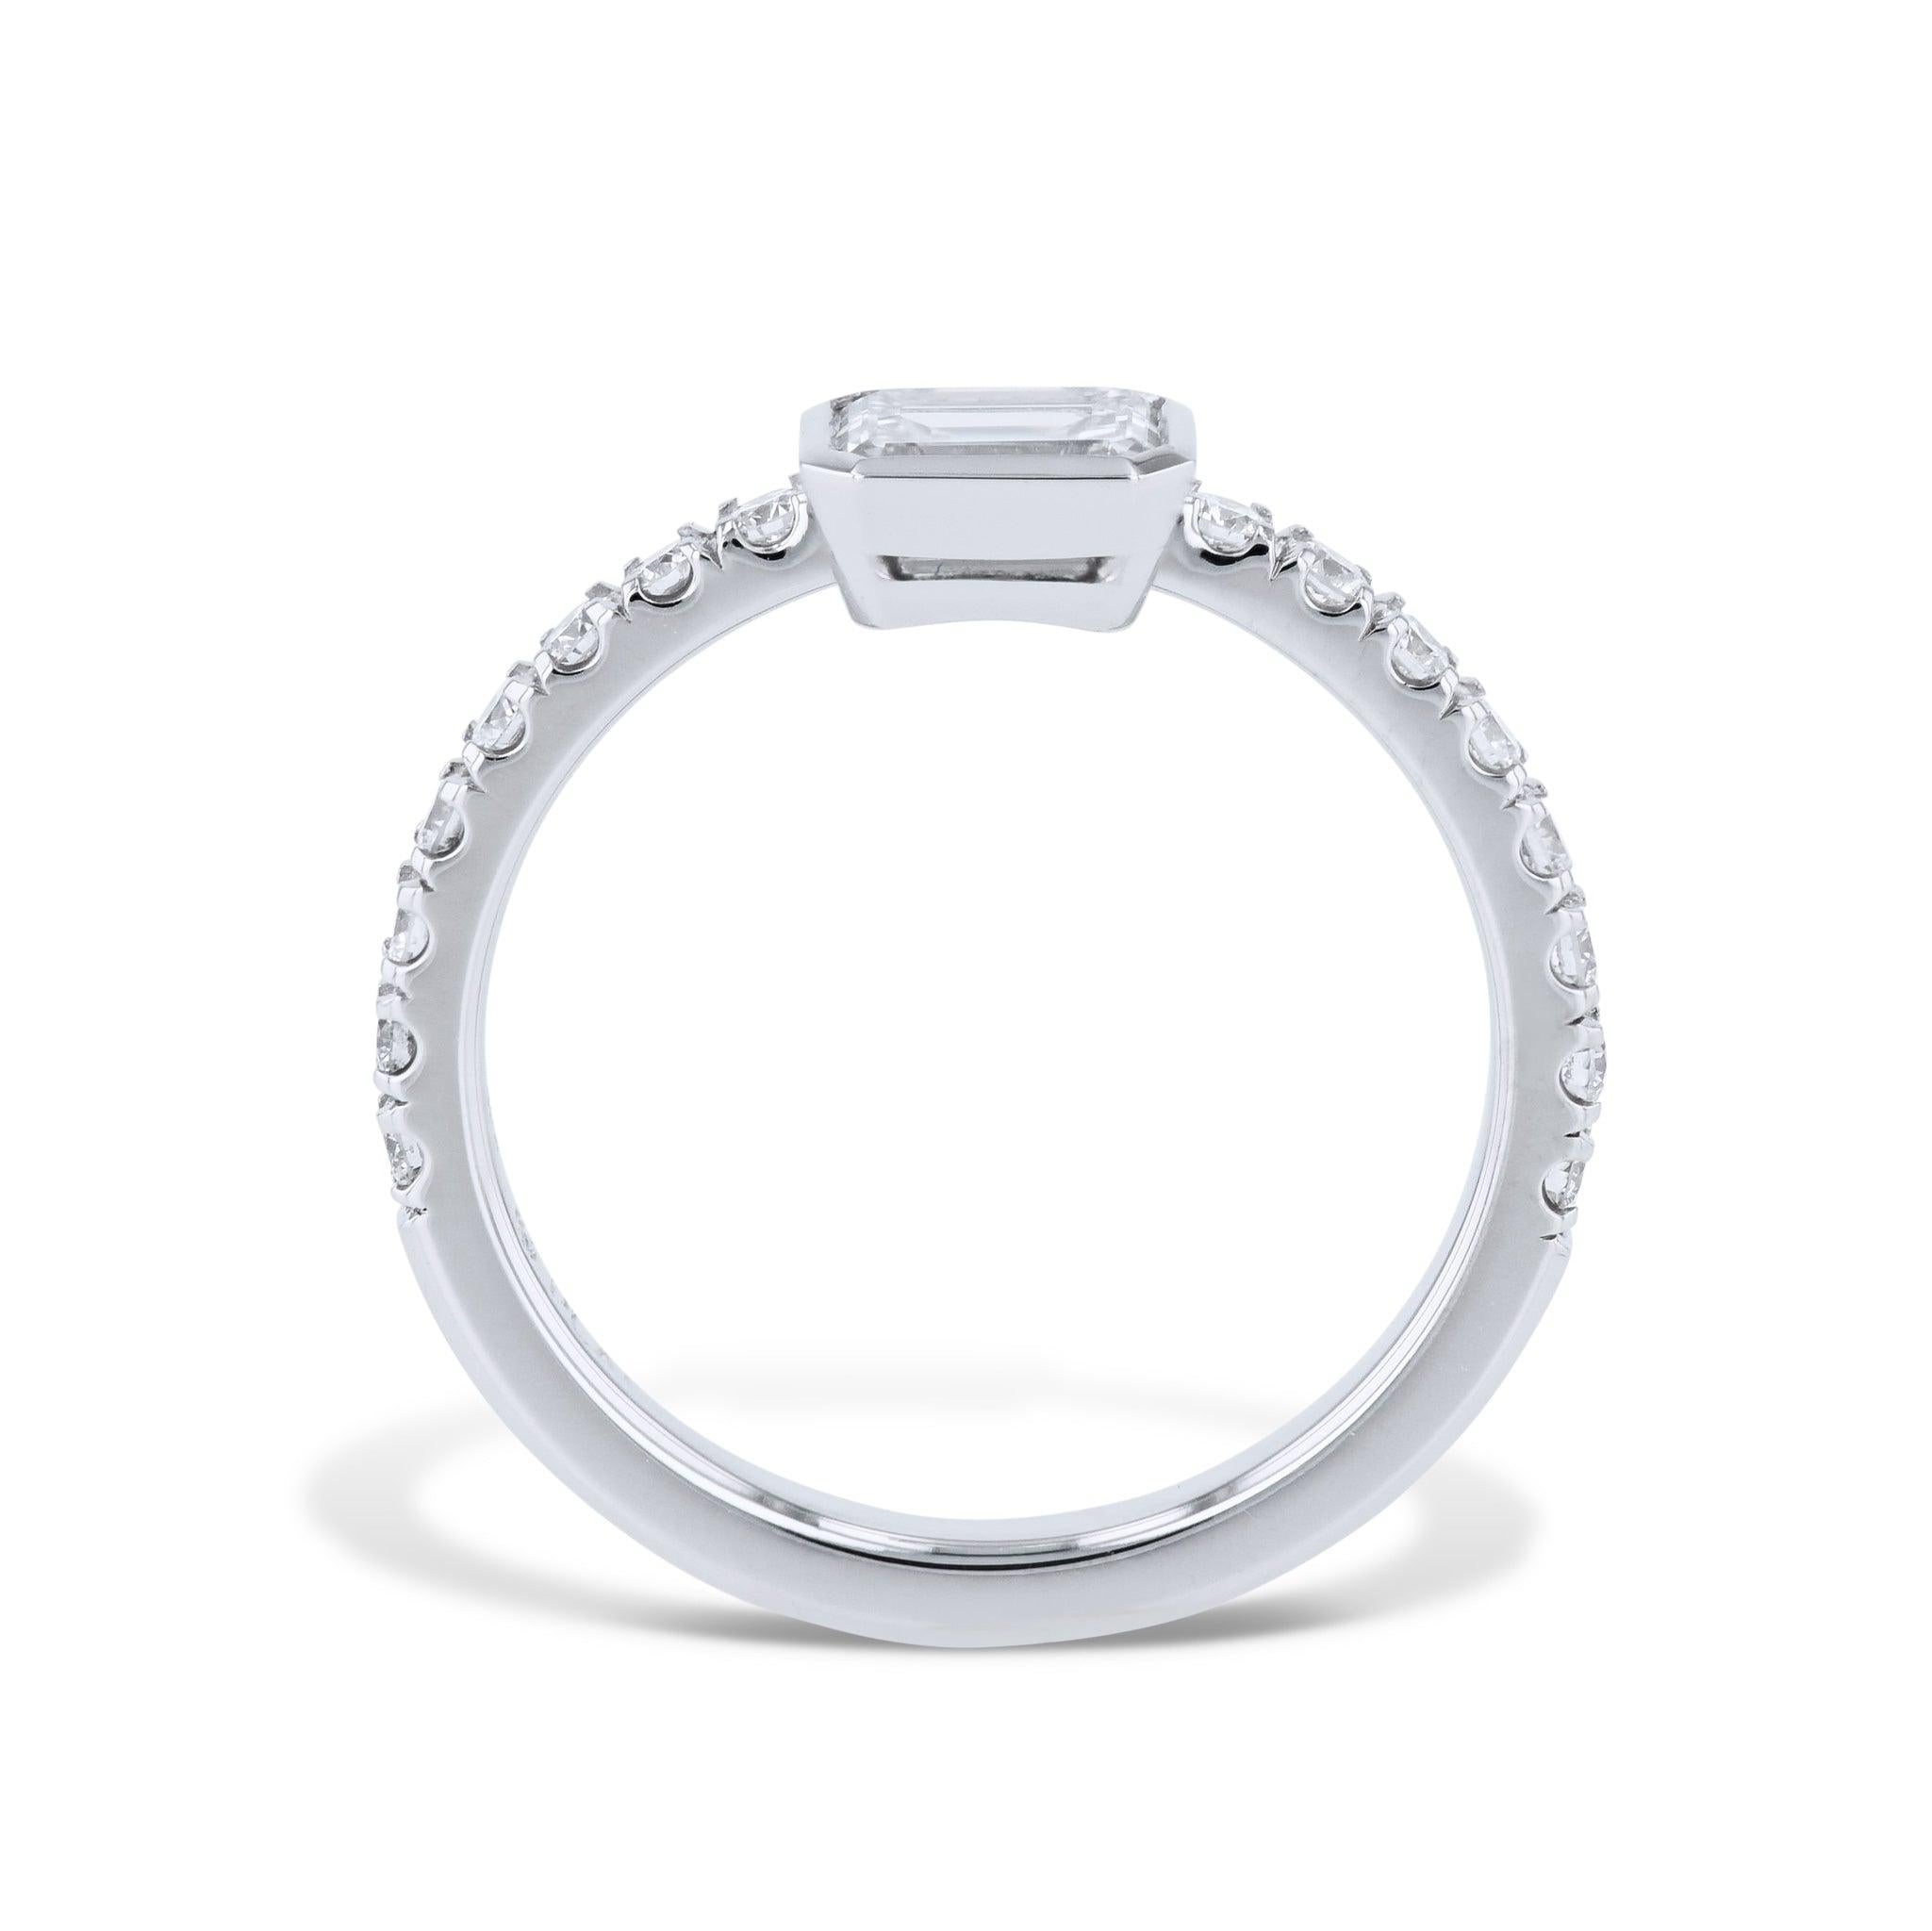 Cette bague de fiançailles en platine avec diamant taille émeraude est le symbole parfait de votre amour. Fabriqué à la main par H&H Collectional, il est orné d'un magnifique diamant central de taille émeraude, complété par un anneau pavé de